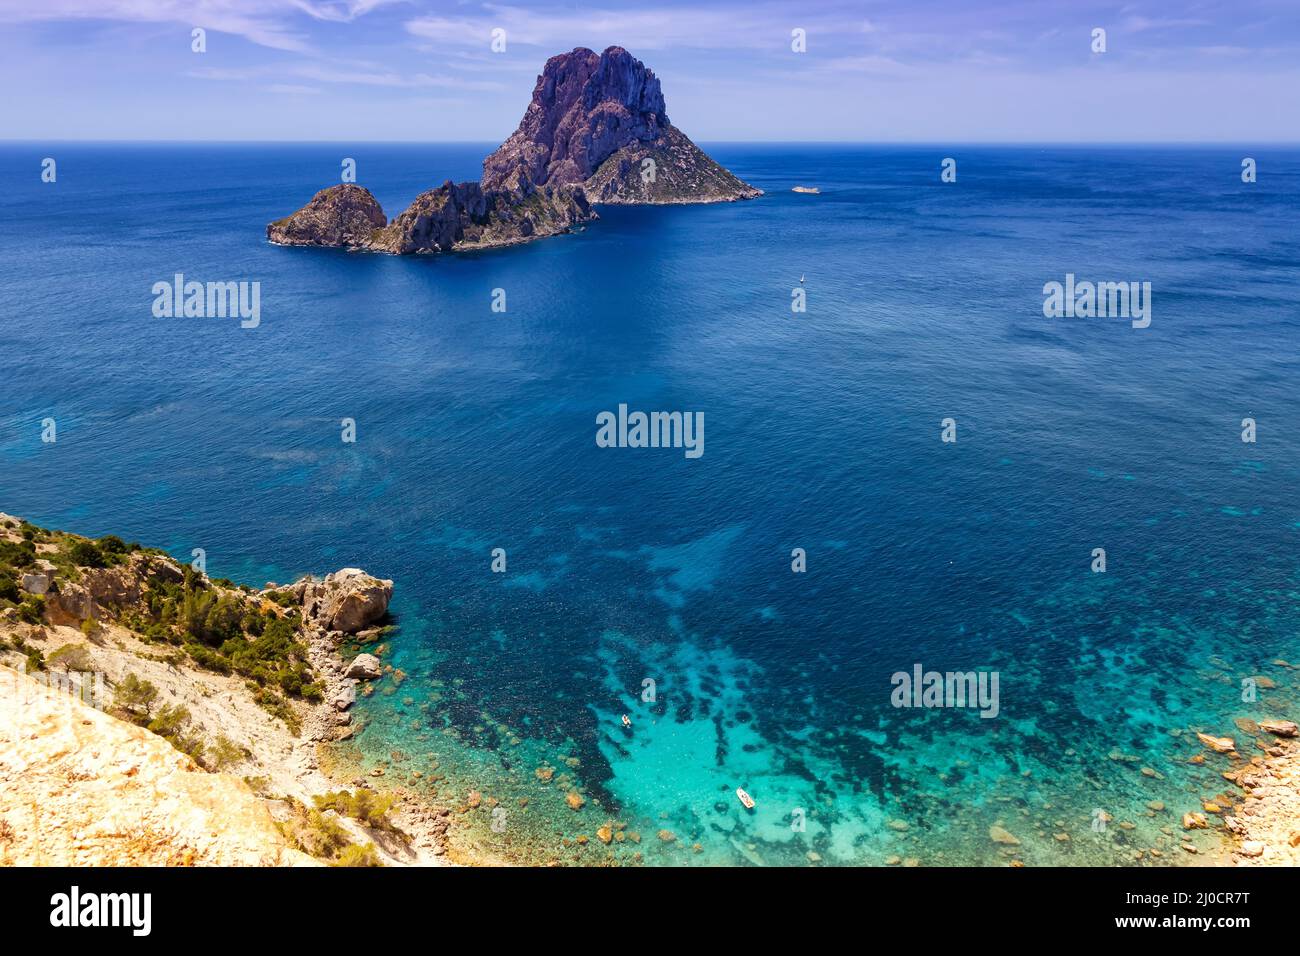 Ibiza Espagne es Vedra rock île voyage mer baie Méditerranée vacances Banque D'Images